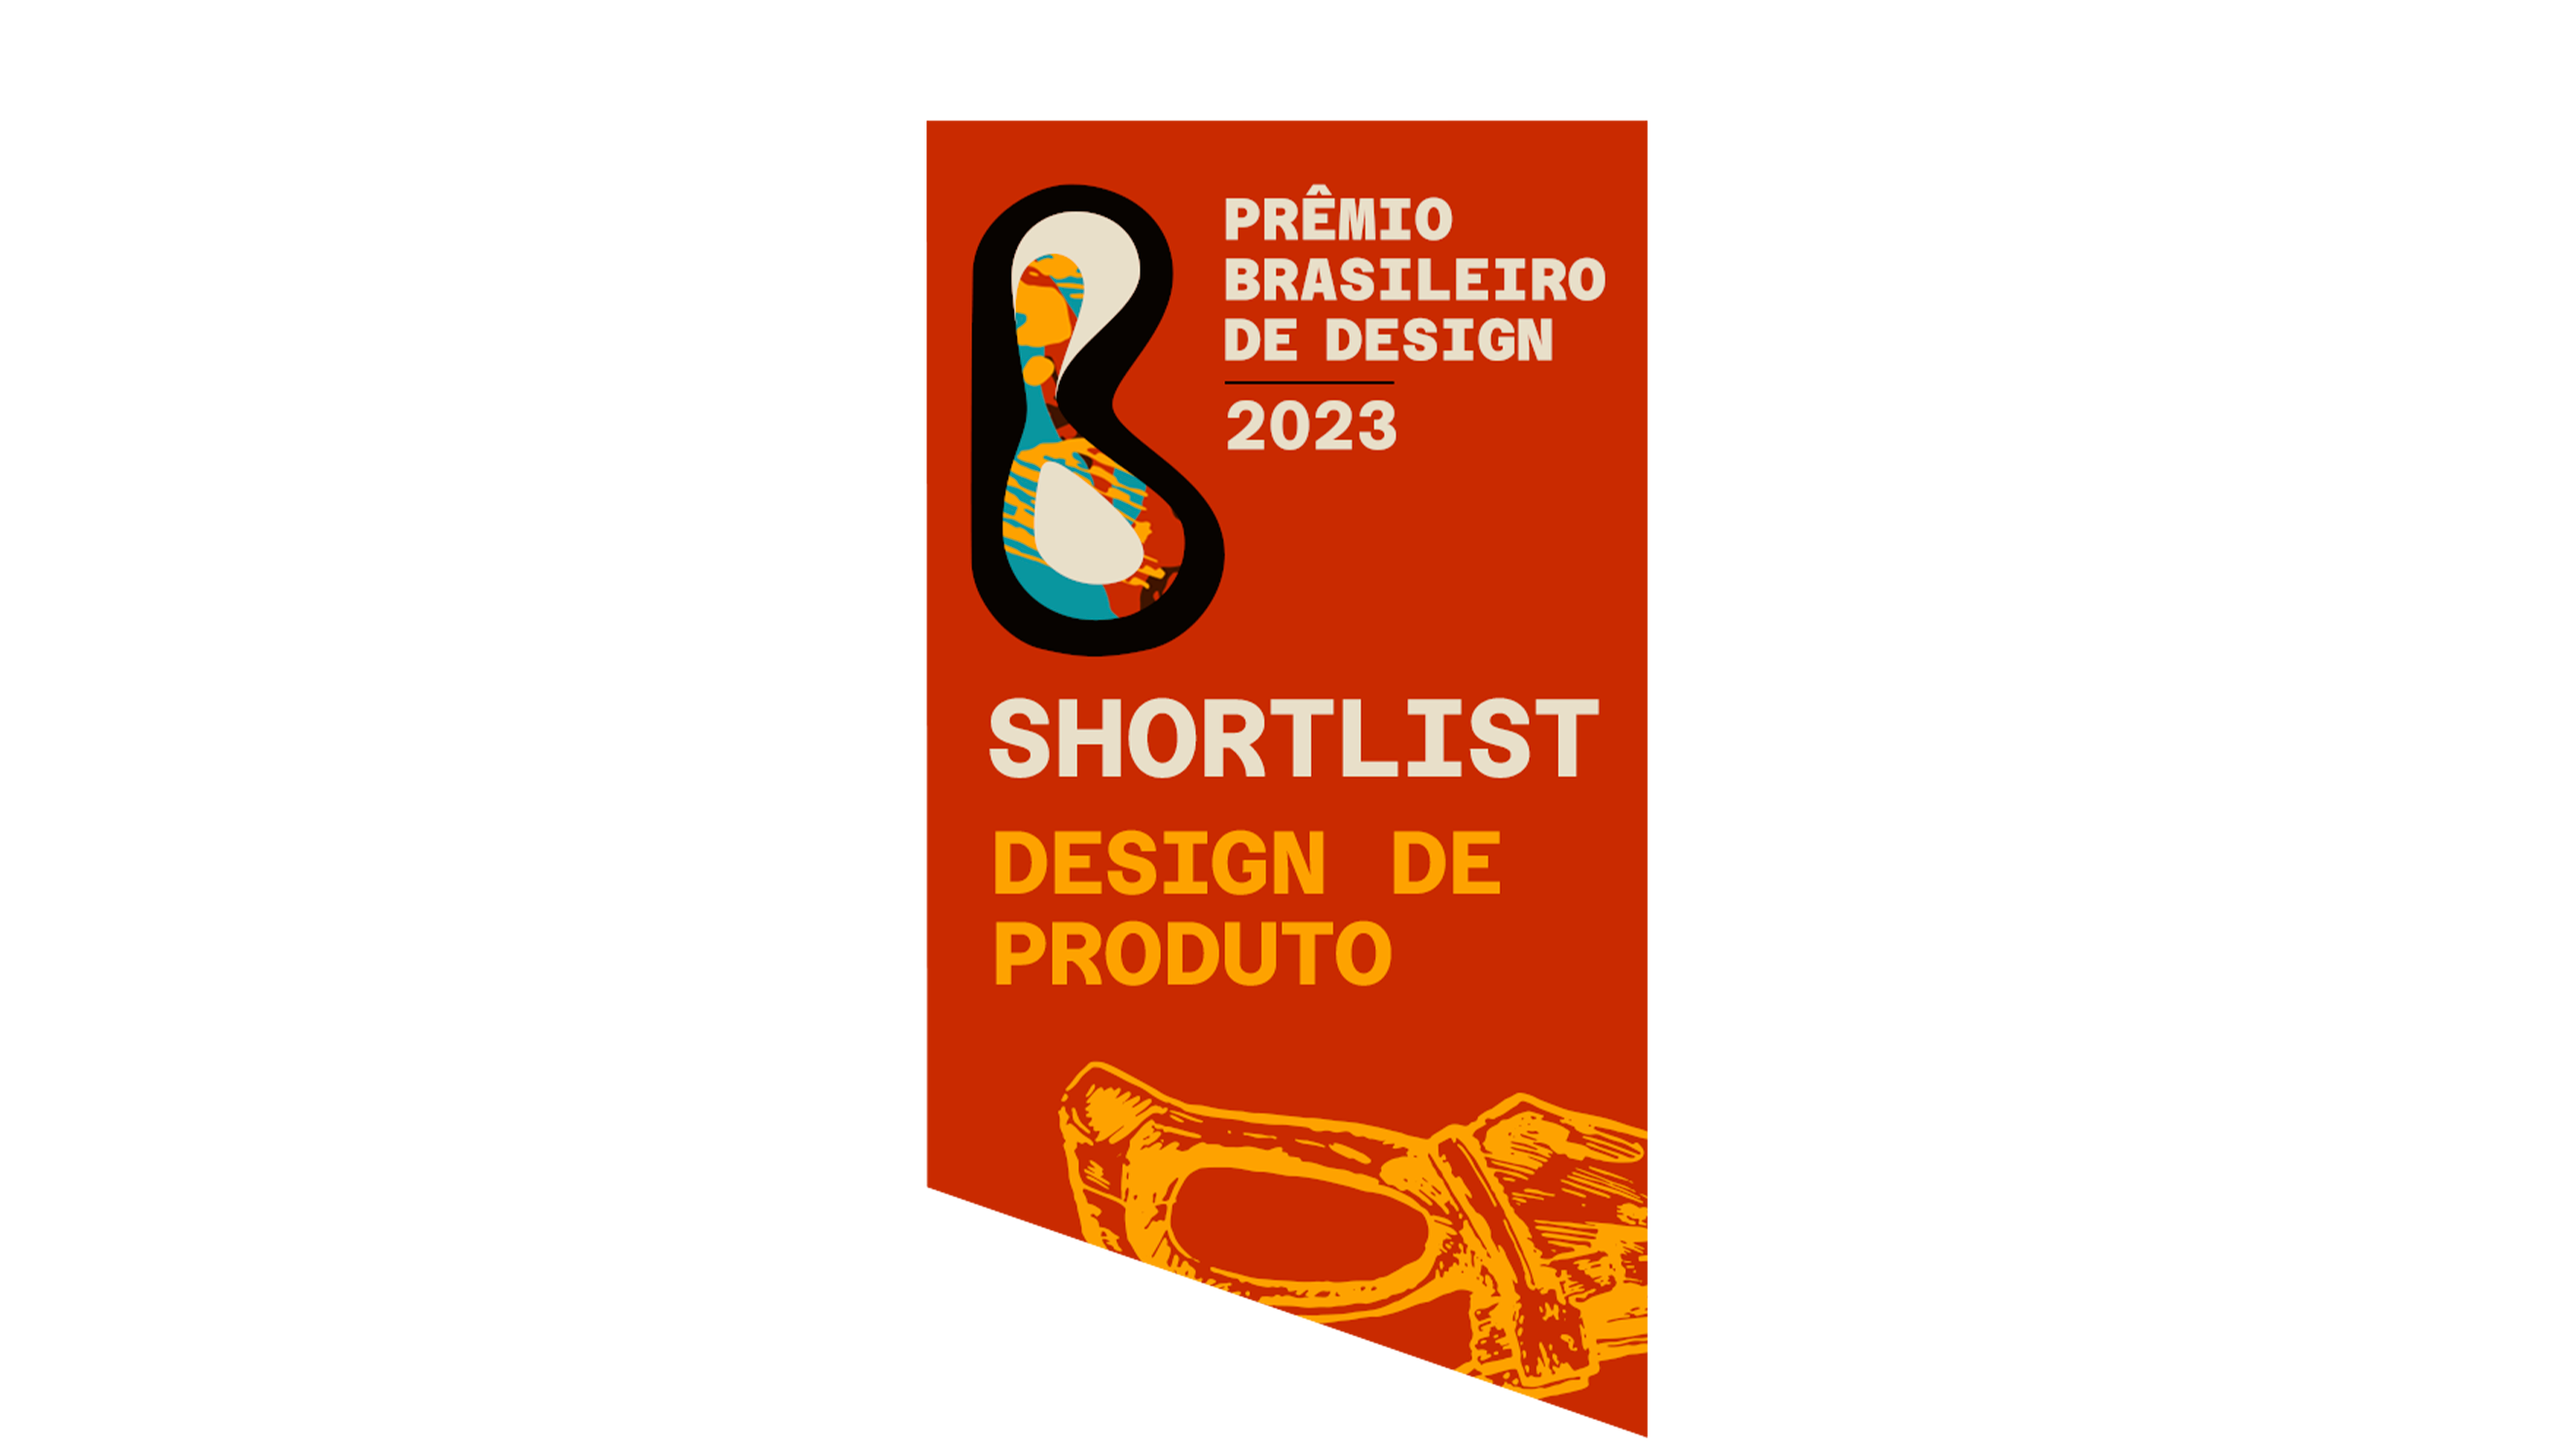 Finalista do Prêmio Brasileiro de Design 2023